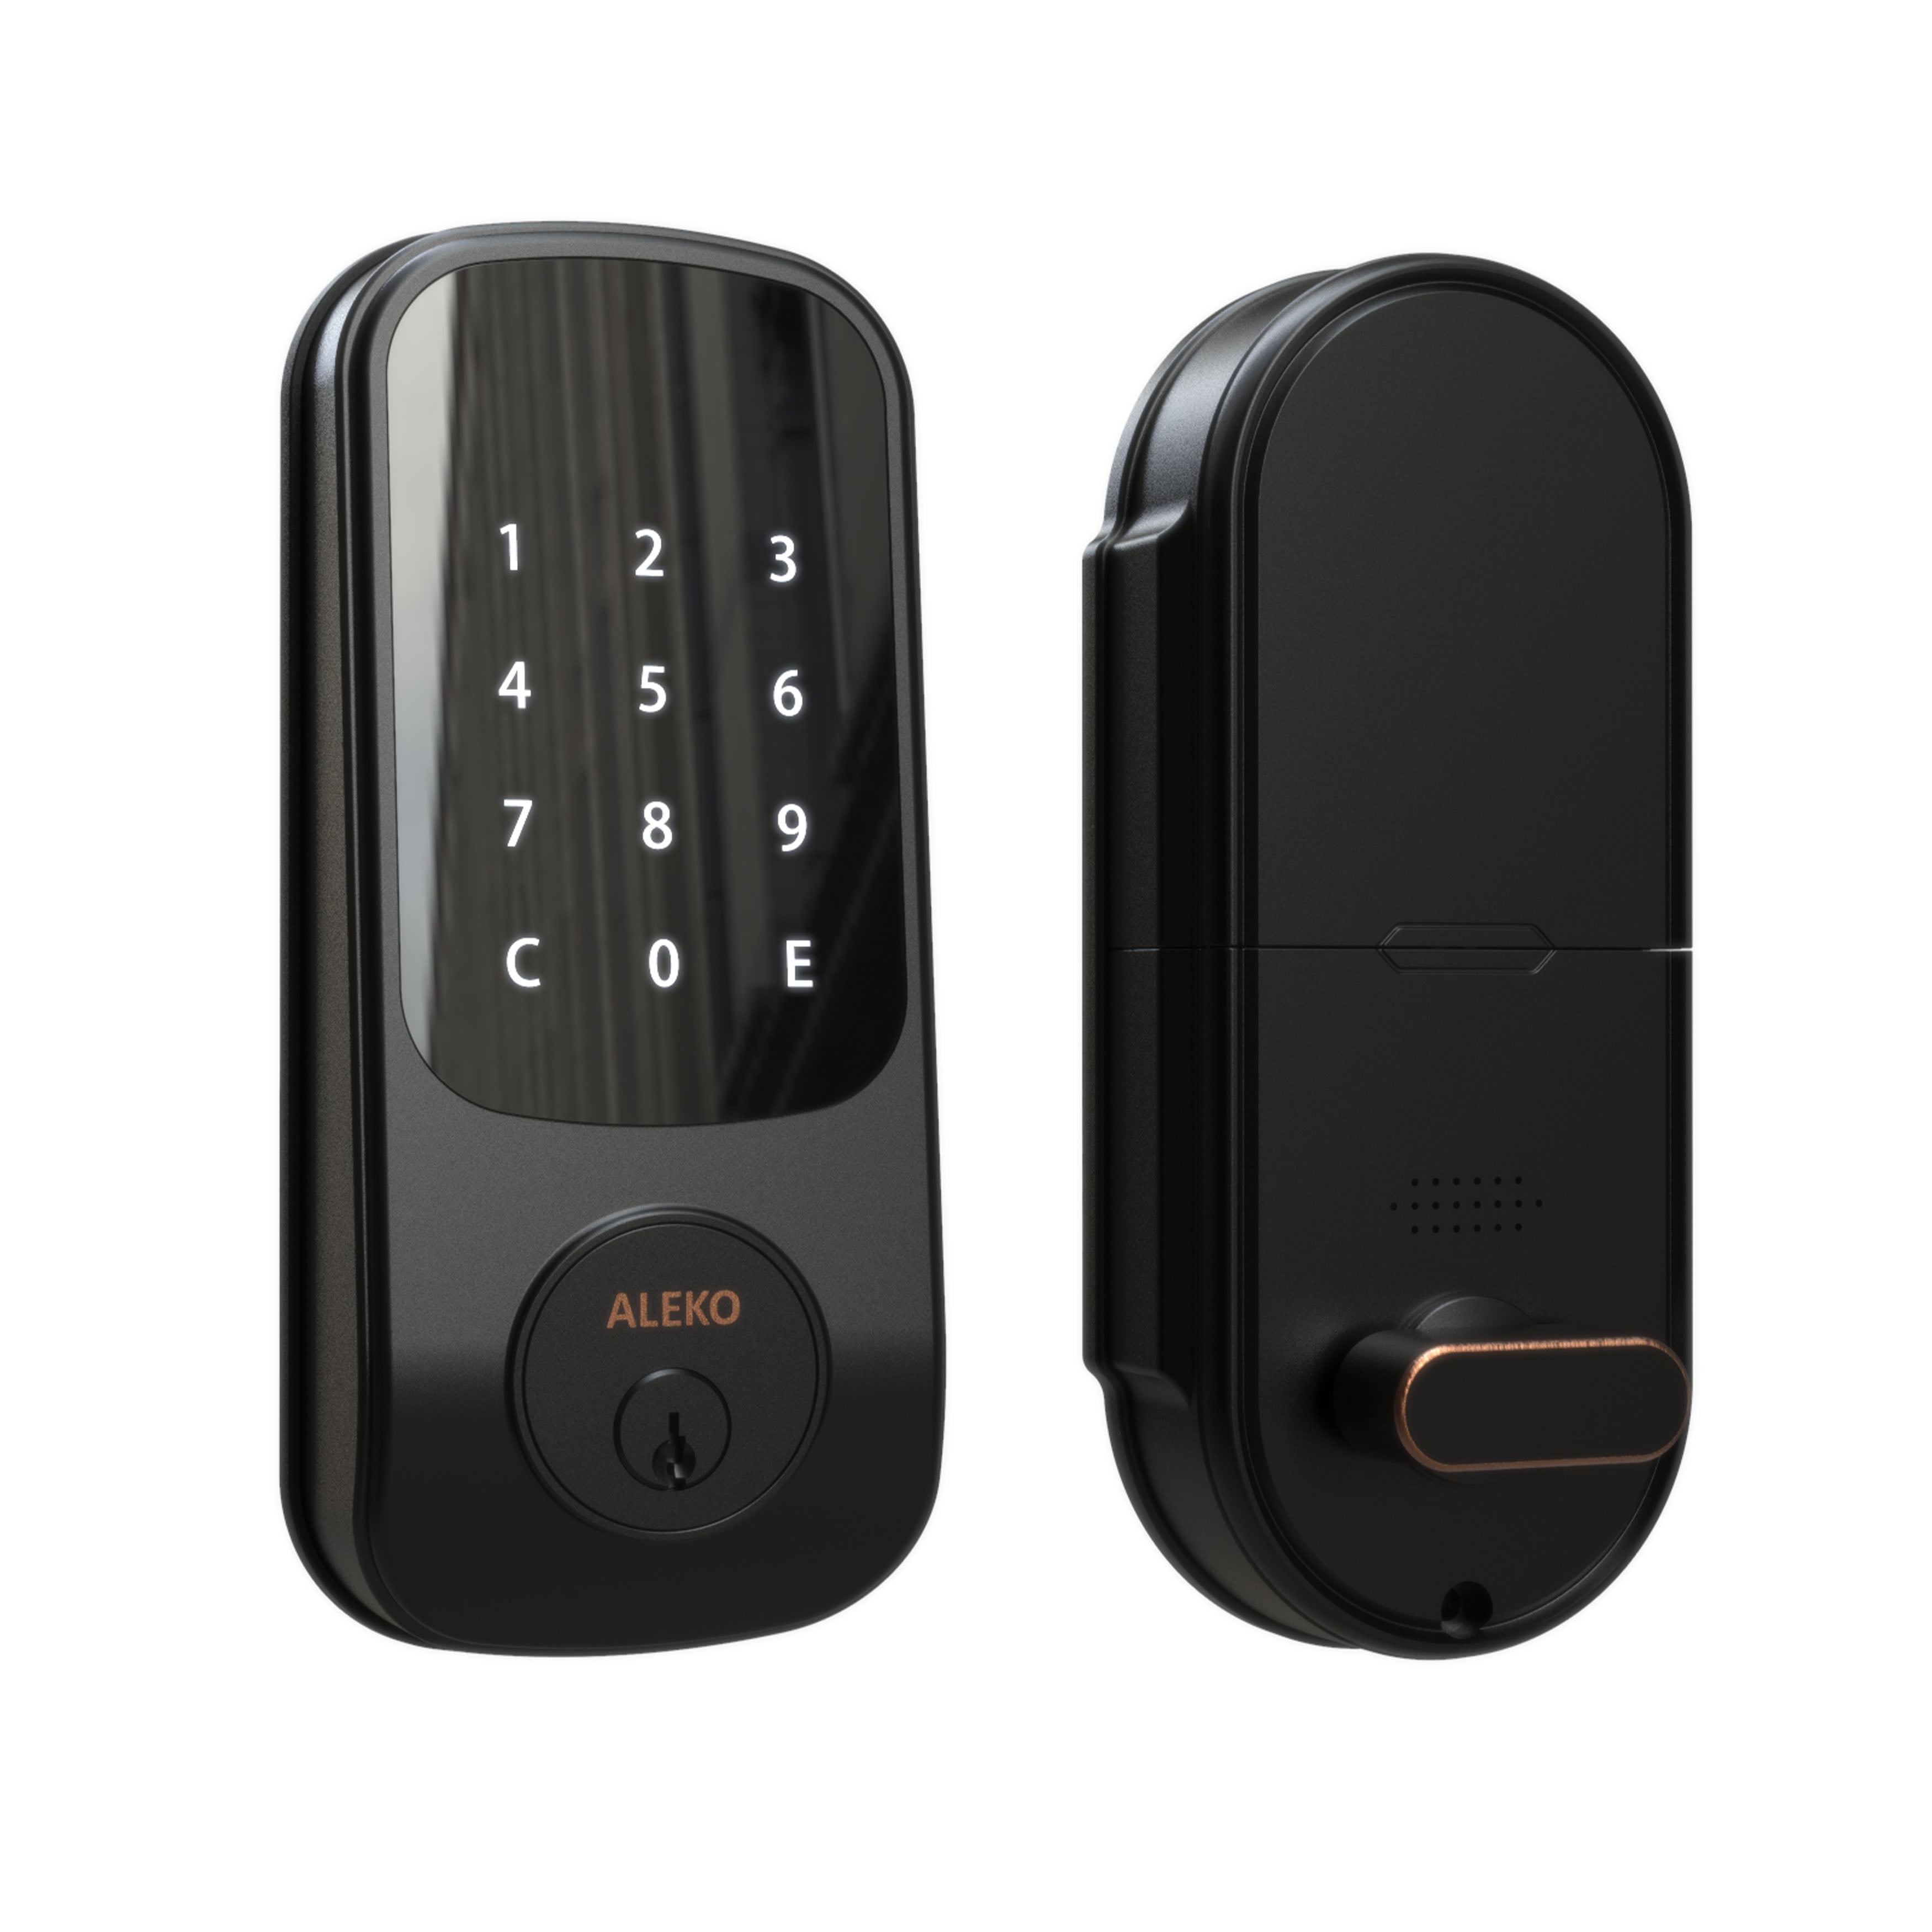 ALEKO DLOCK04 2-in-1 Keyless Entry Smart Door Lock with Touchscreen ...